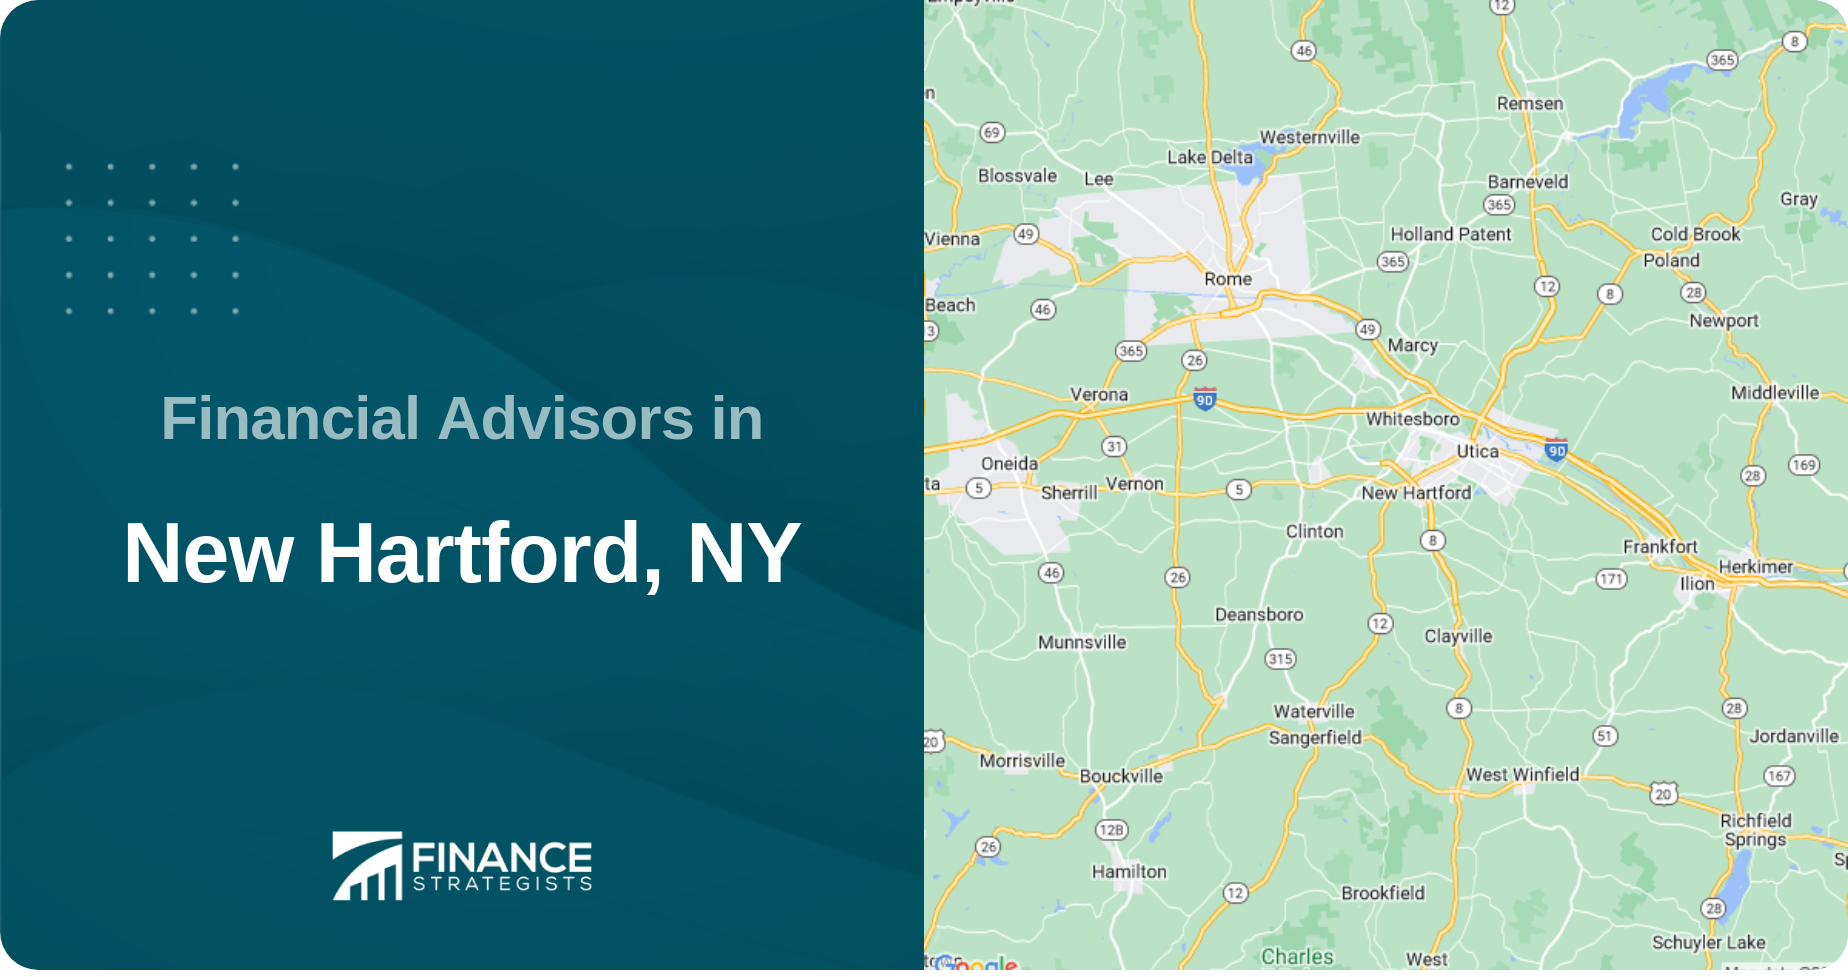 Financial Advisors in New Hartford, NY